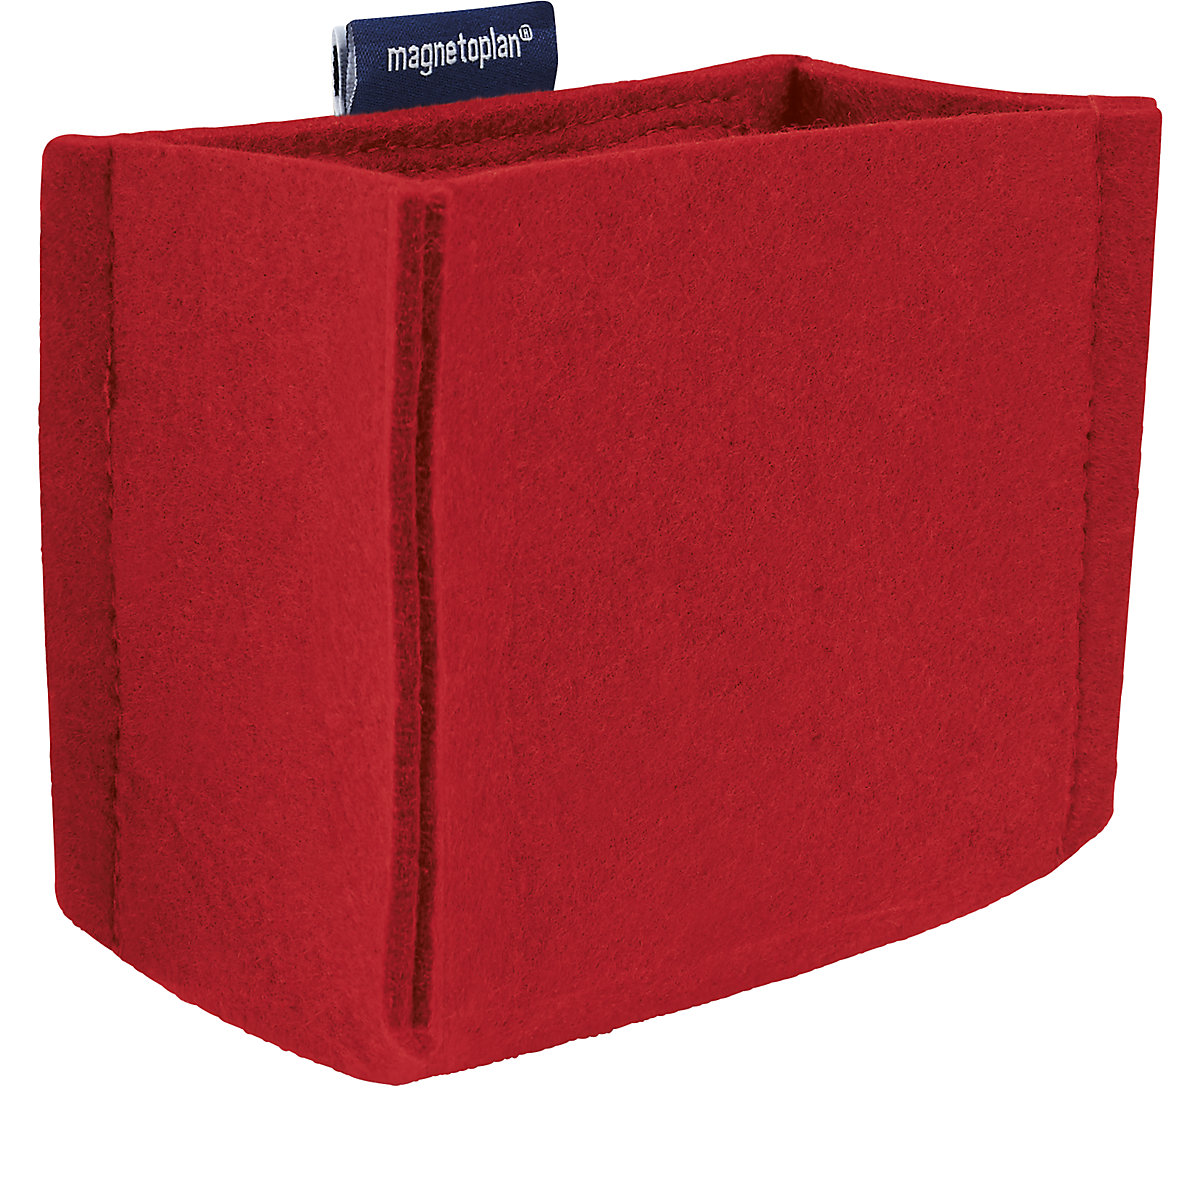 Zásobník na písacie potreby magnetoTray – magnetoplan, MEDIUM, v x š x h 100 x 130 x 60 mm, červená, od 5 ks-5